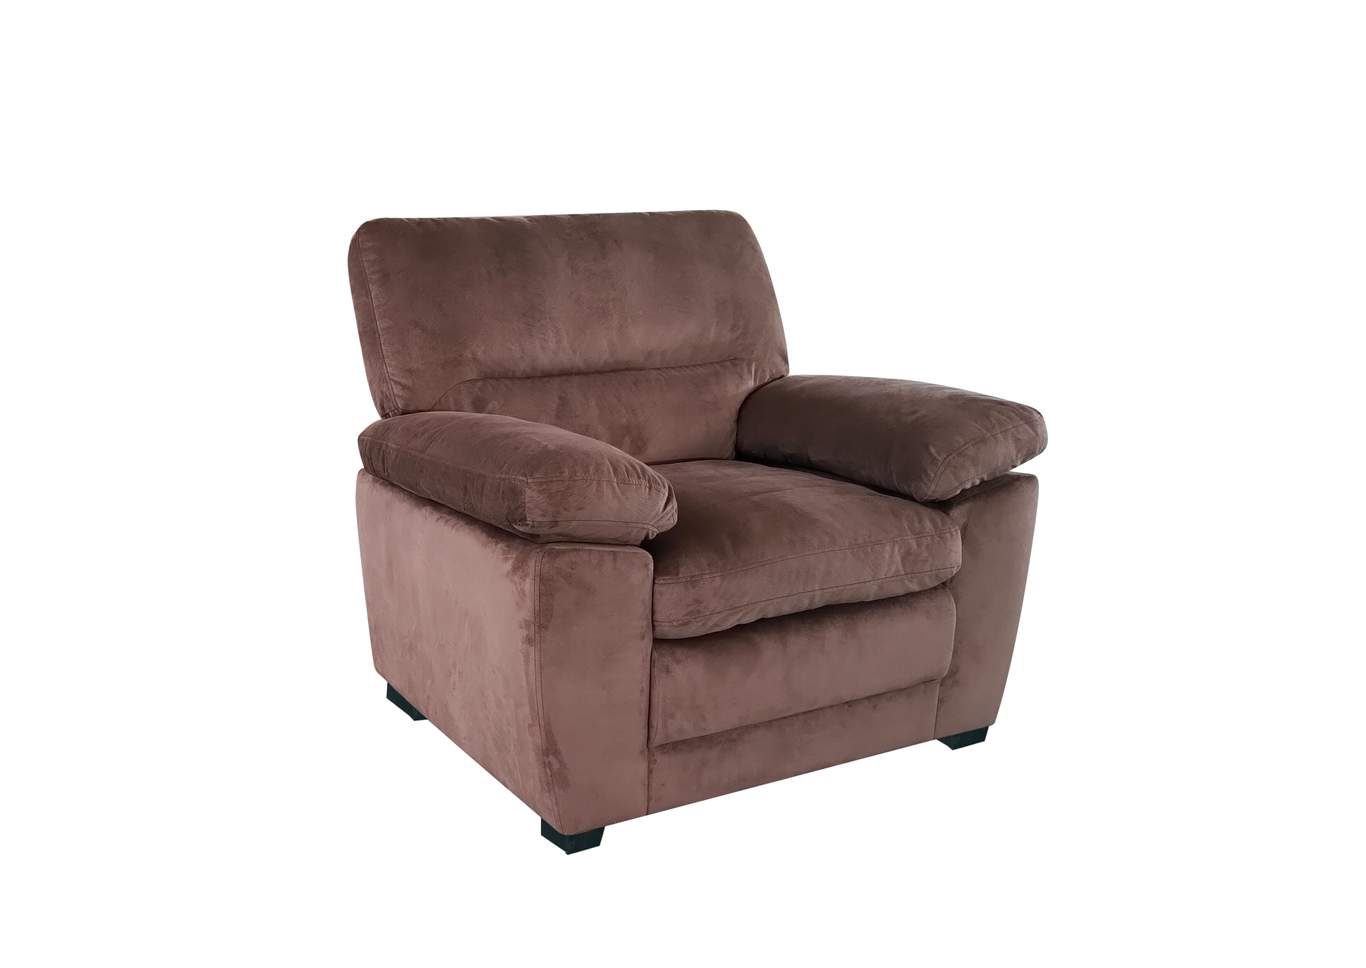 Chair,Galaxy Home Furniture